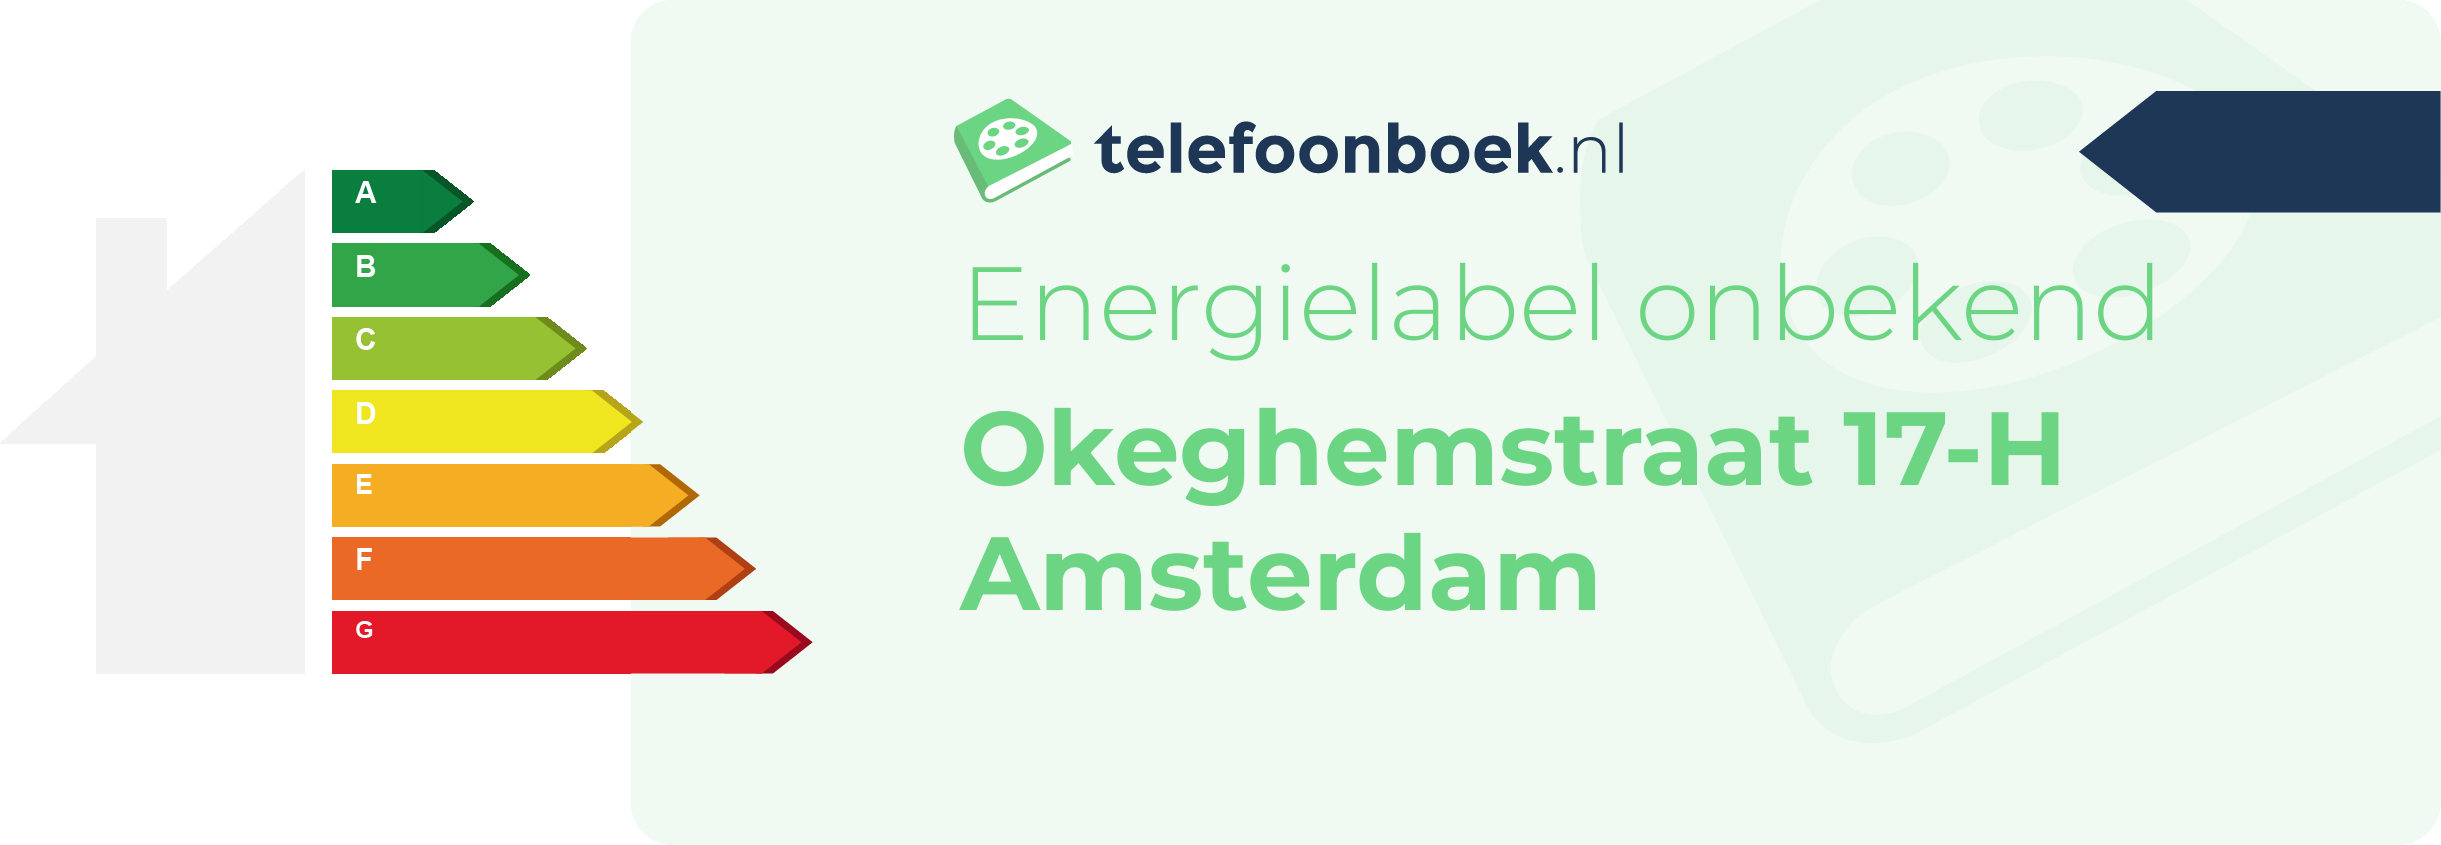 Energielabel Okeghemstraat 17-H Amsterdam